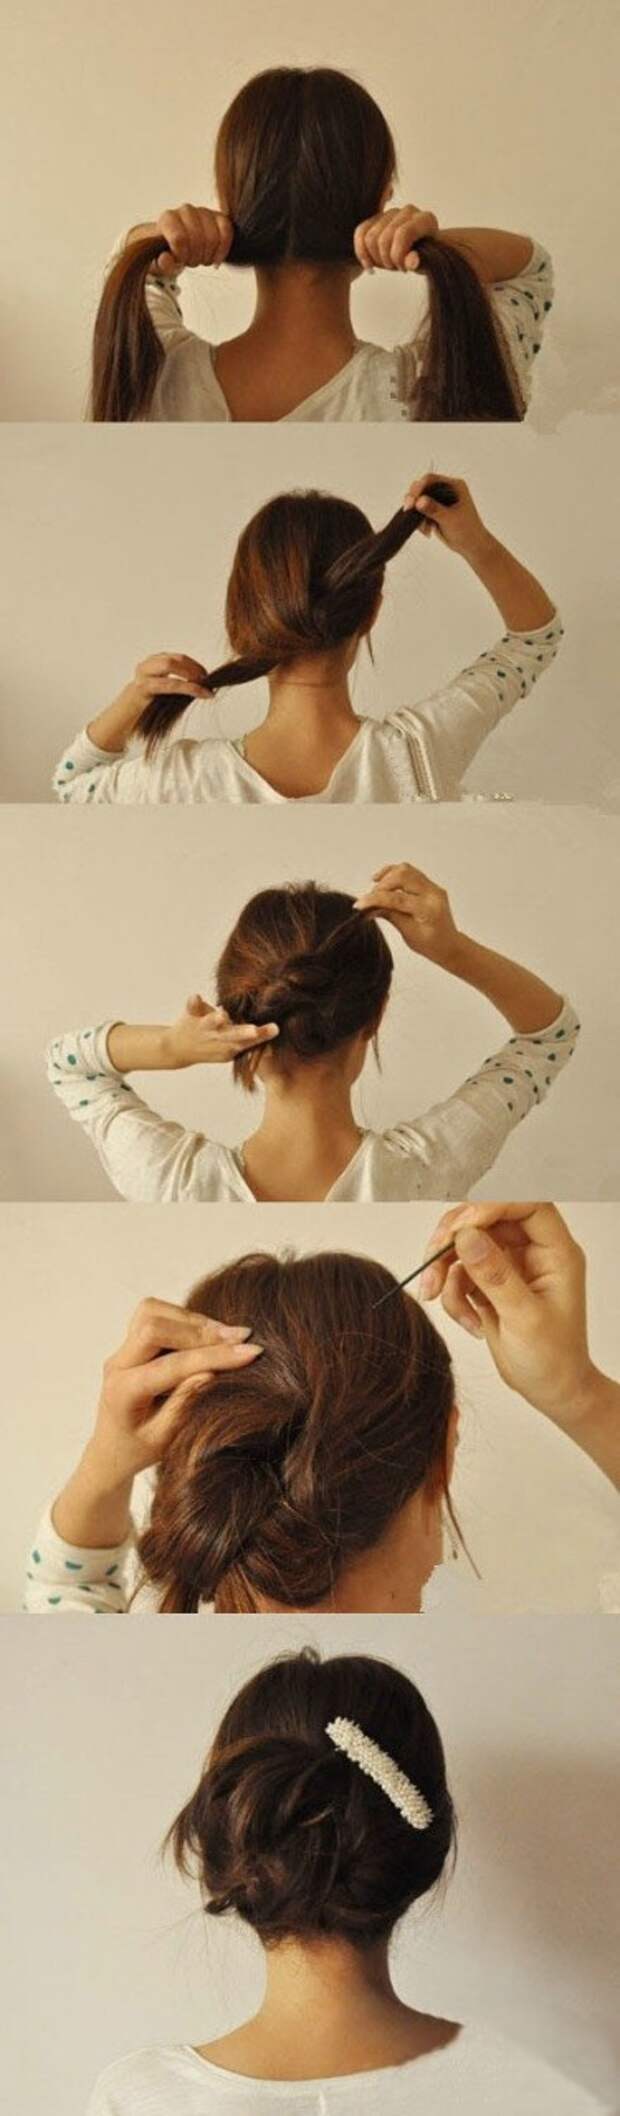 Как быстро убрать волосы на голове быстро и красиво